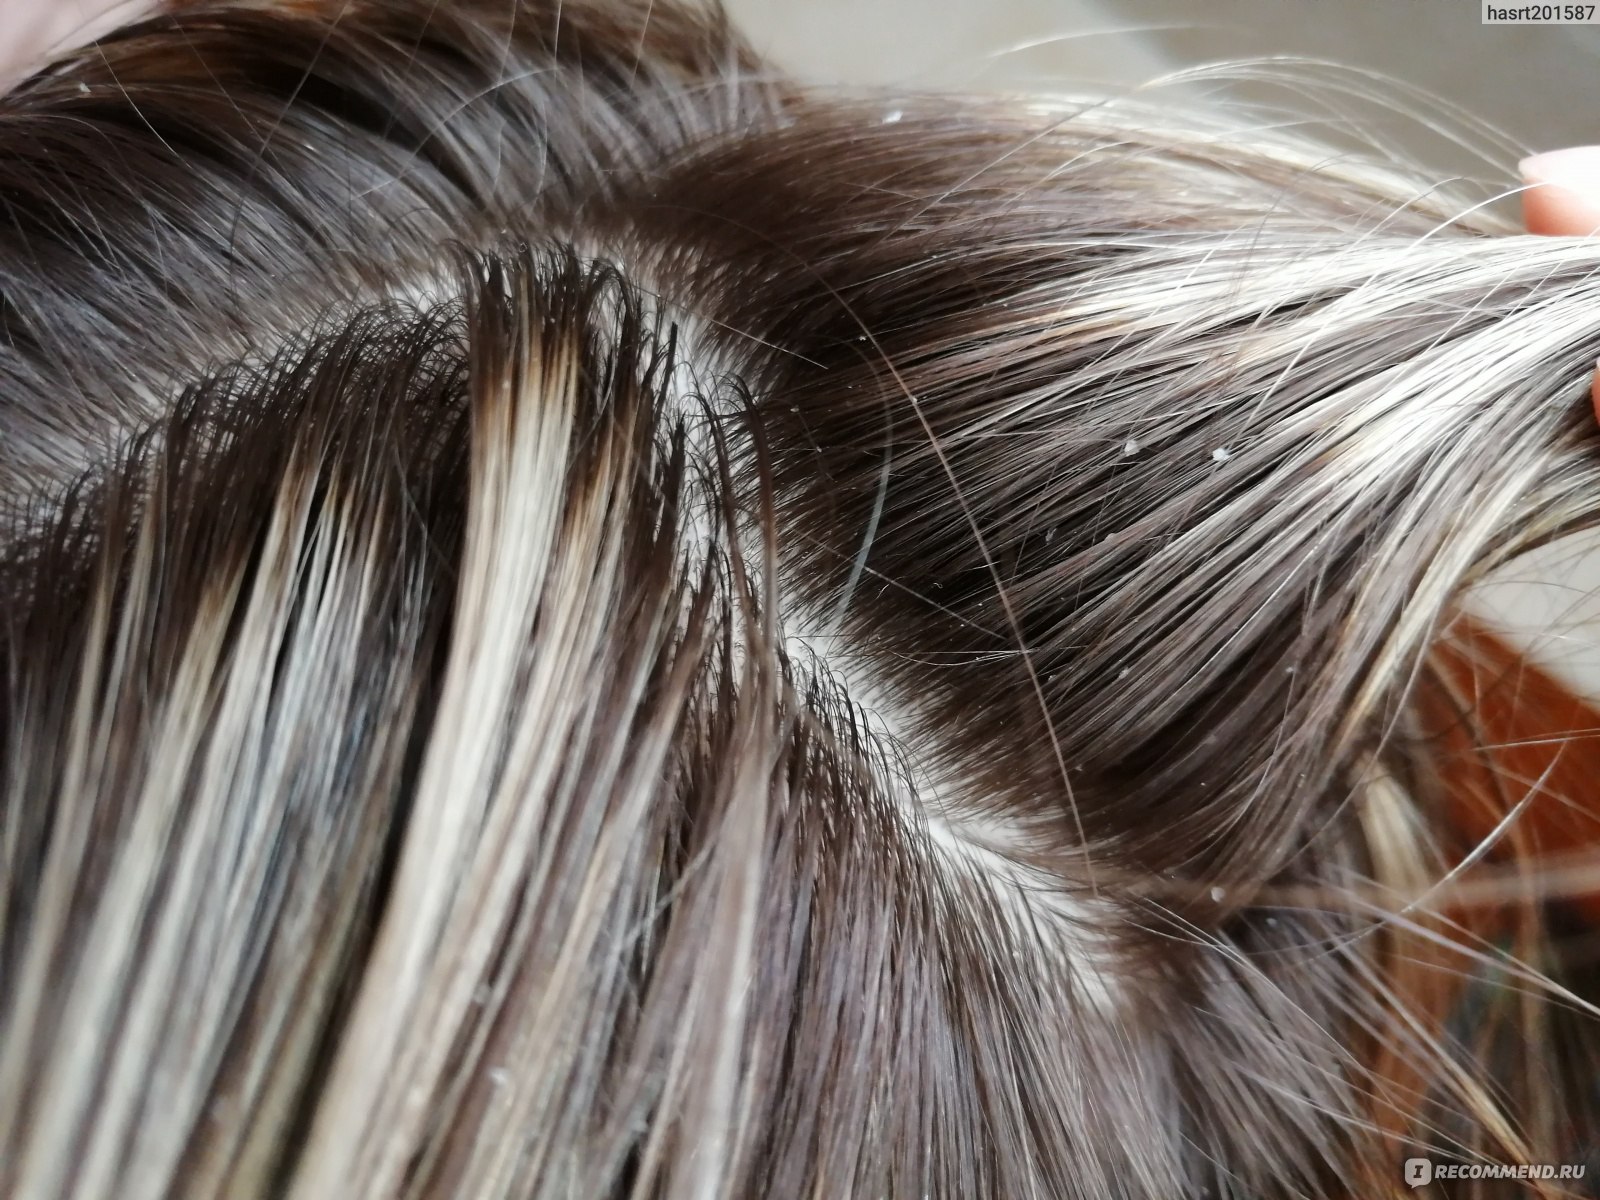 Пилинг кожи головы: скрабы, которые вернут жизнь твоим волосам